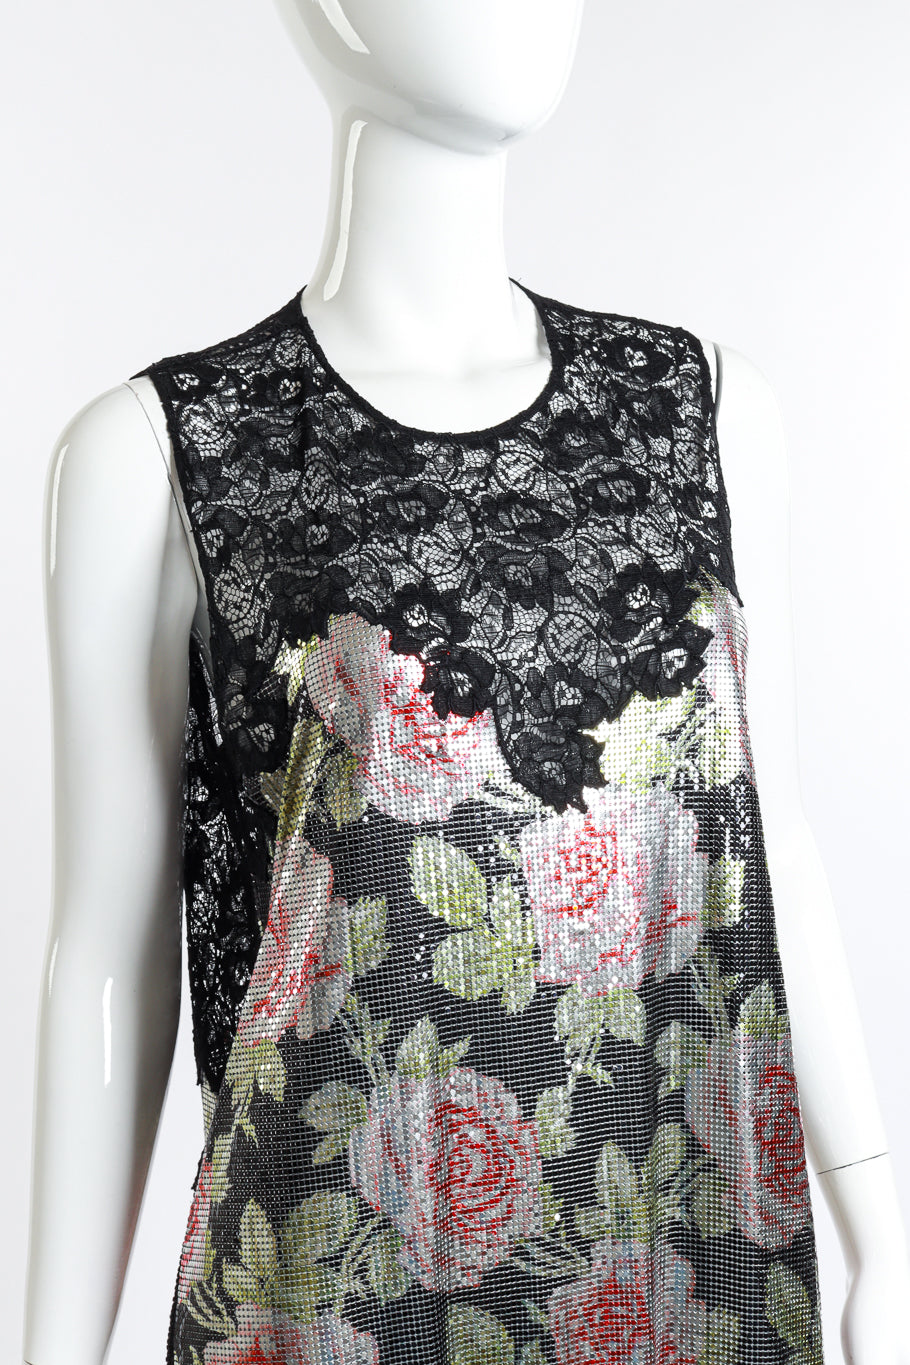 Paco Rabanne Metallic Rose Lace Dress detail on Mannequin @RECESS LA